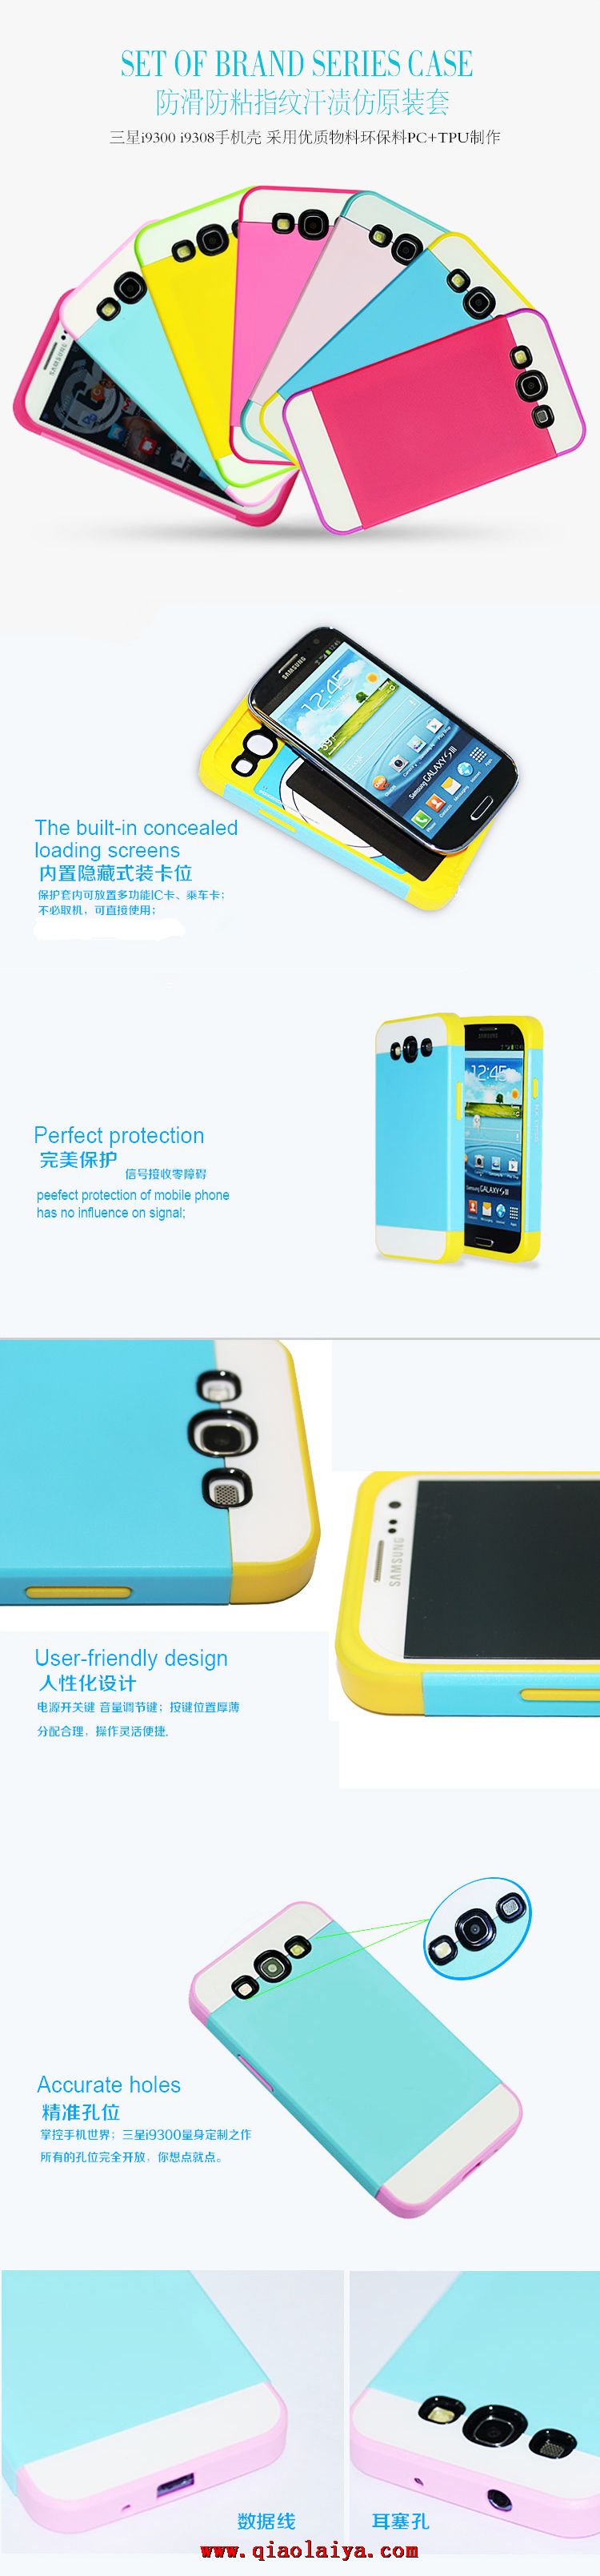 Etui en silicone Samsung Galaxy S3 i9300 téléphone mobile coque Les sandwichs de protection tricolores manches